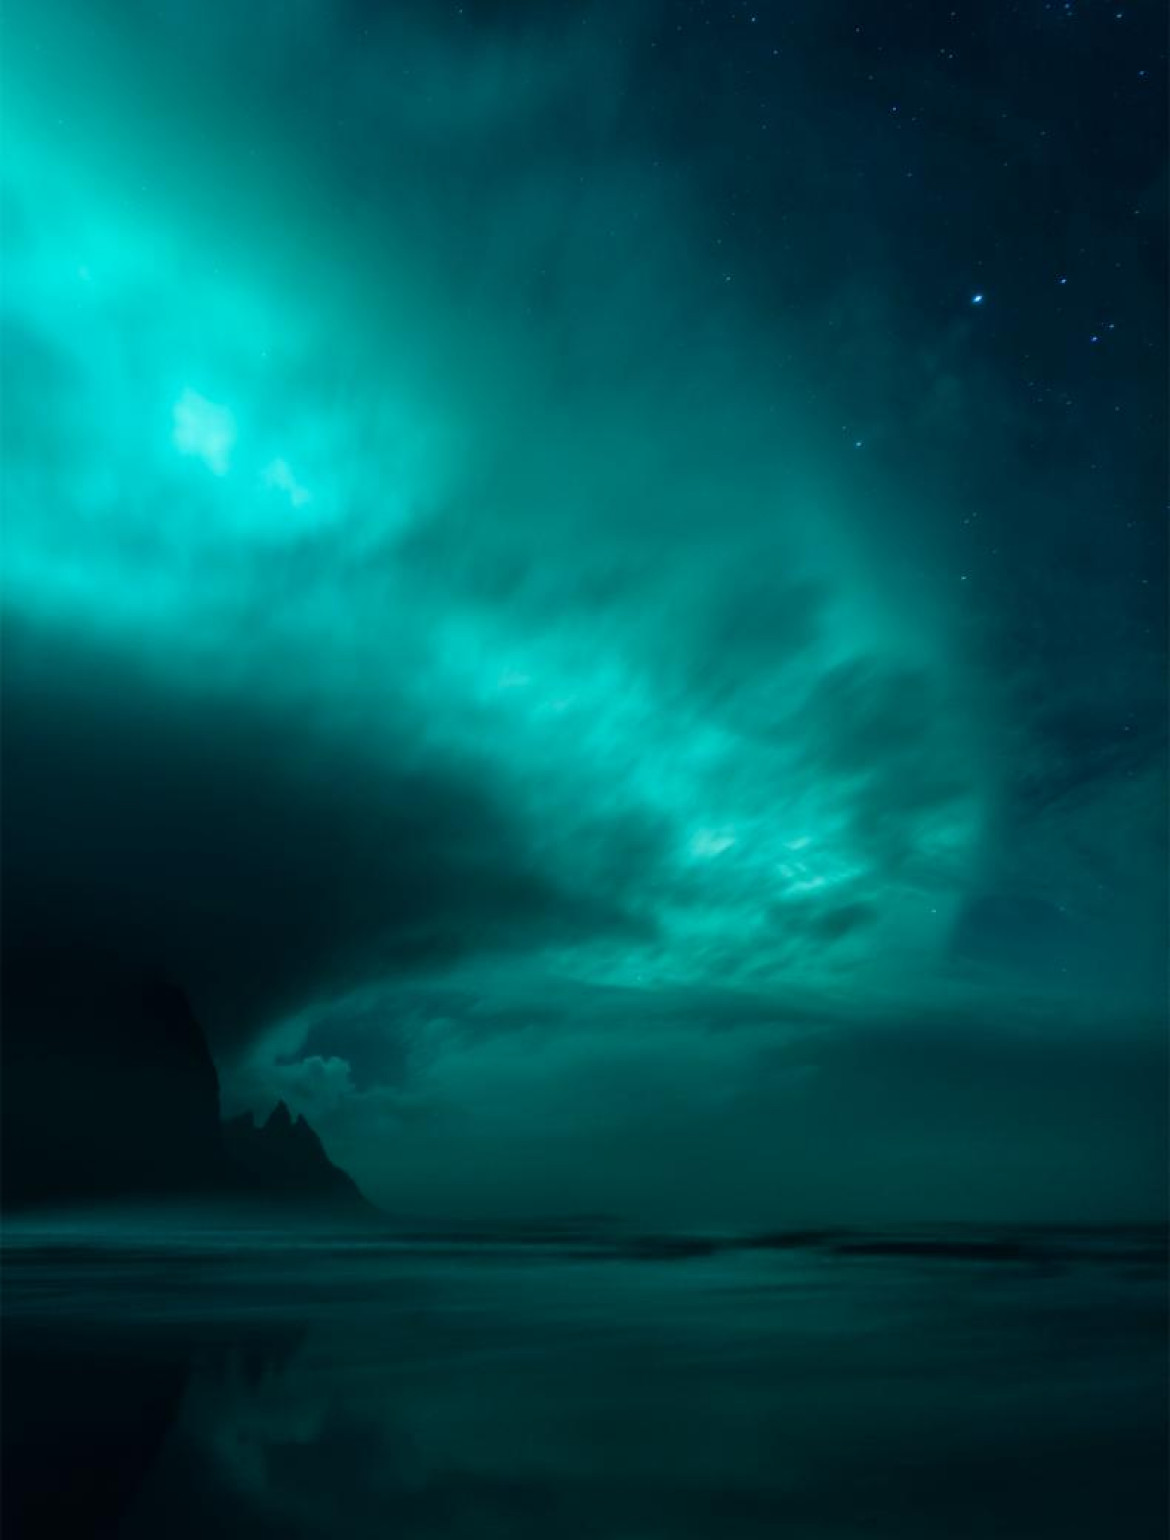 Mikkel Beiter - I miejsce w kategorii "Aurorae", zdjęcie przedstawia zorzę polarną Borealis